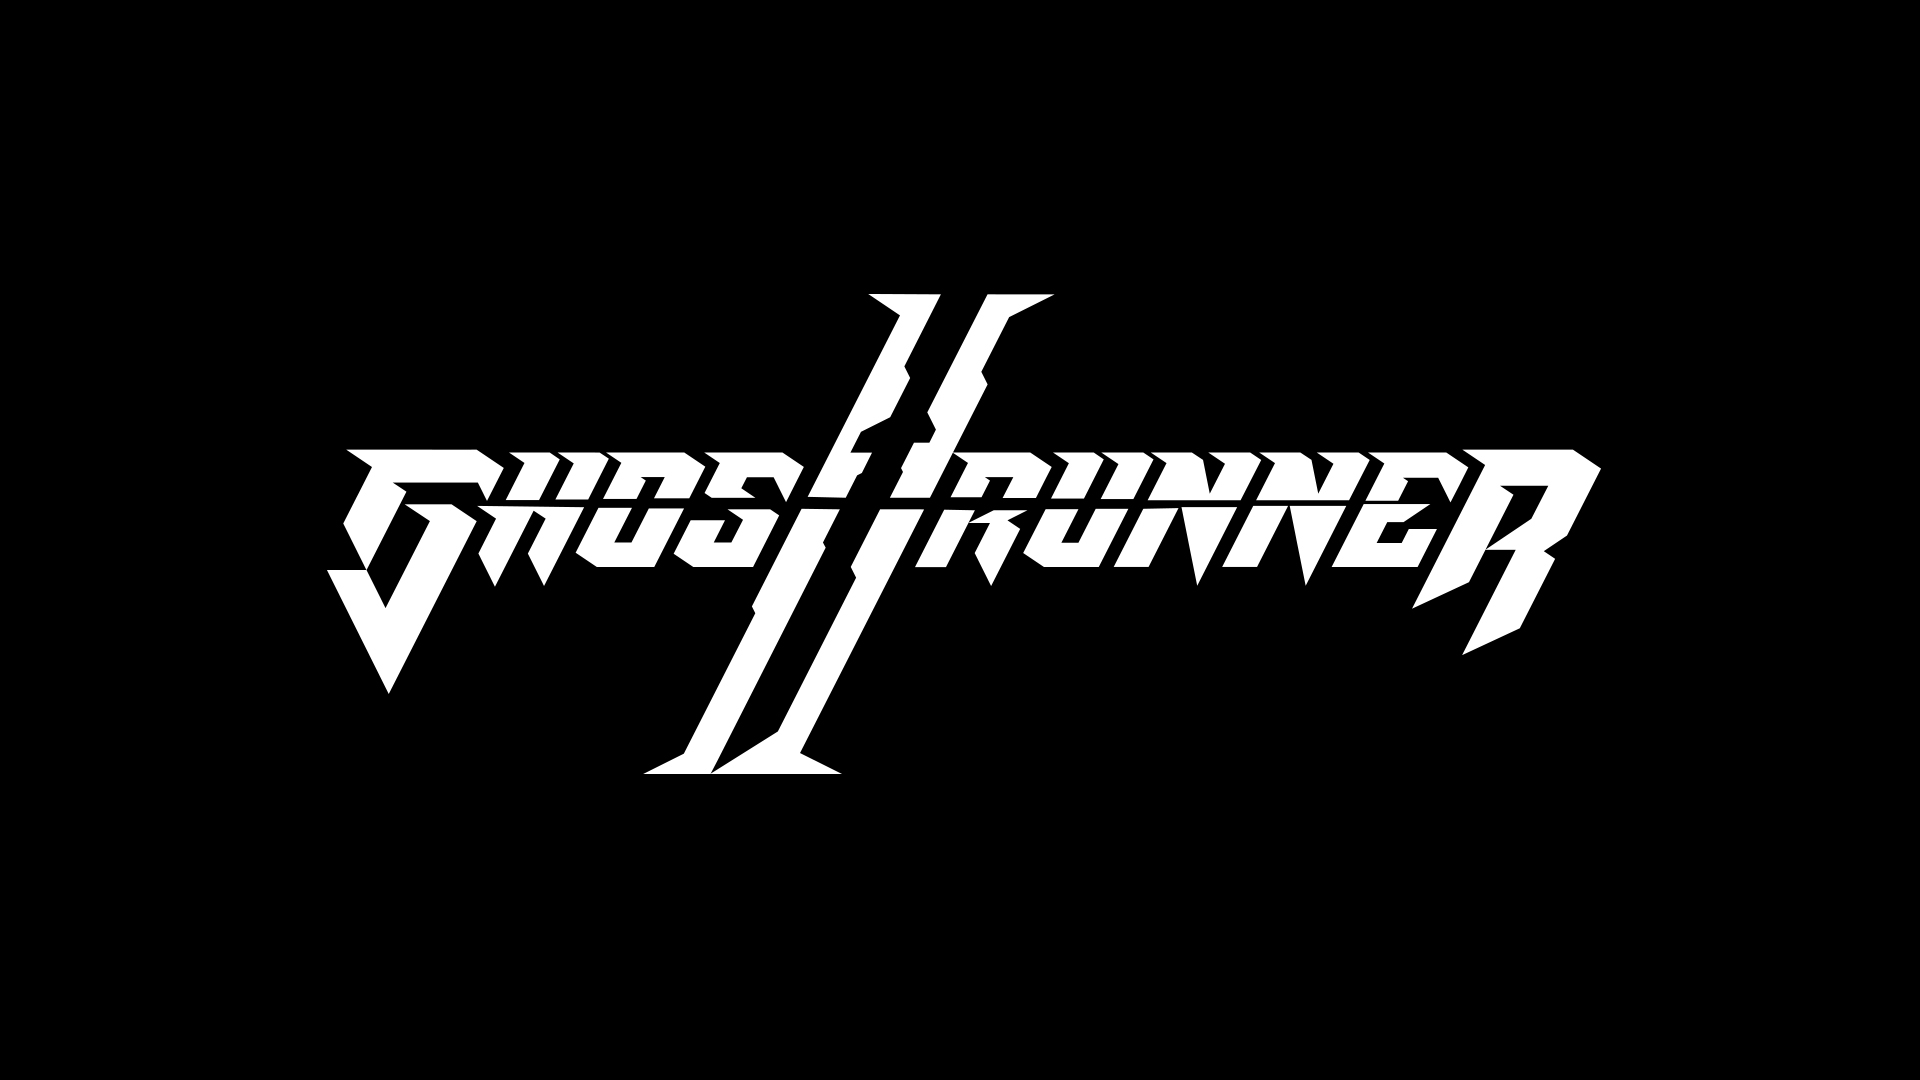 Ghostrunner 2 obre inscripcions per a la seva beta